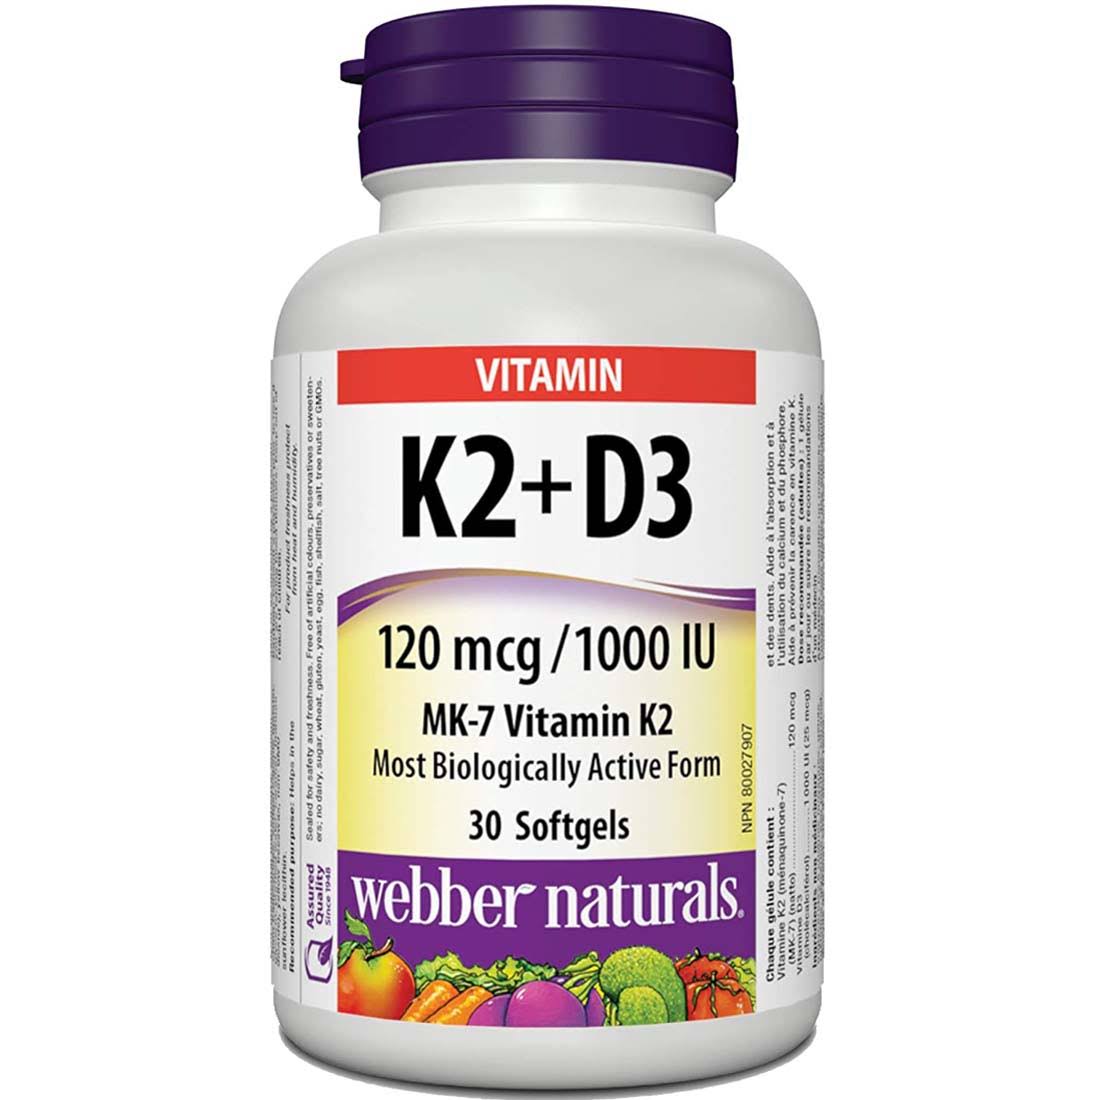 Webber Naturals Vitamin K2 + D3 Softgels